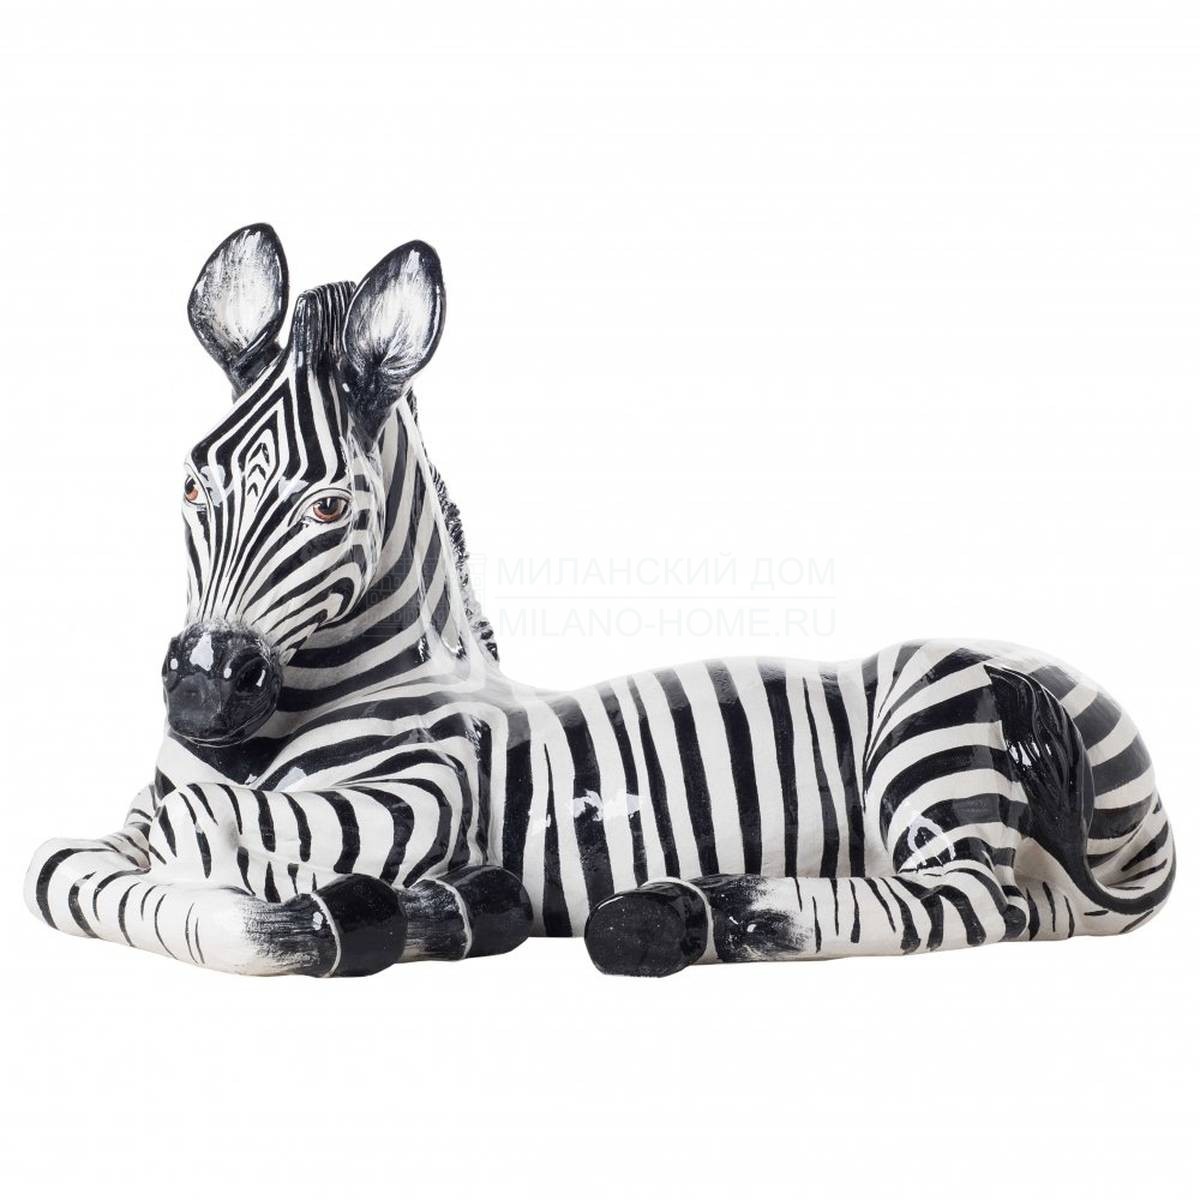 Статуэтка Lying Zebra из Италии фабрики MARIONI